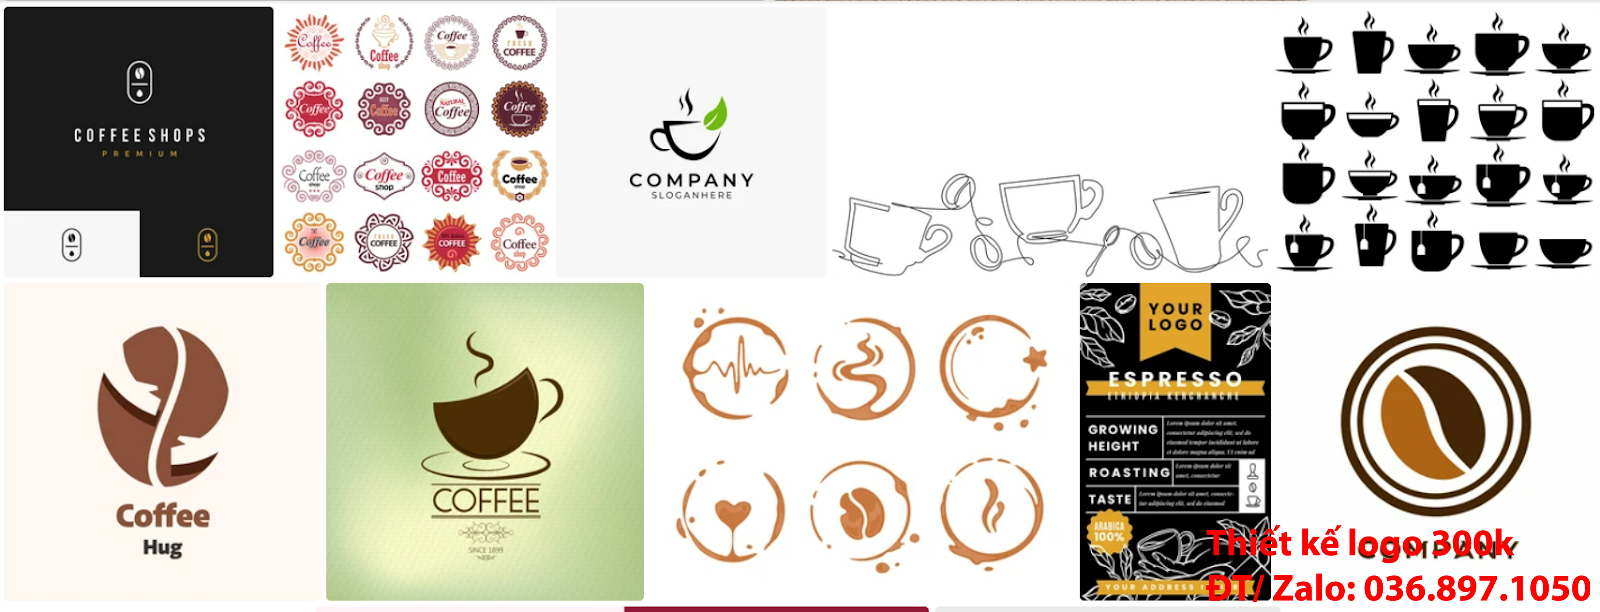 Dịch vụ tạo mẫu thiết kế logo cà phê cafe coffee đẹp nhất hiện nay đơn giản tại TpHCM